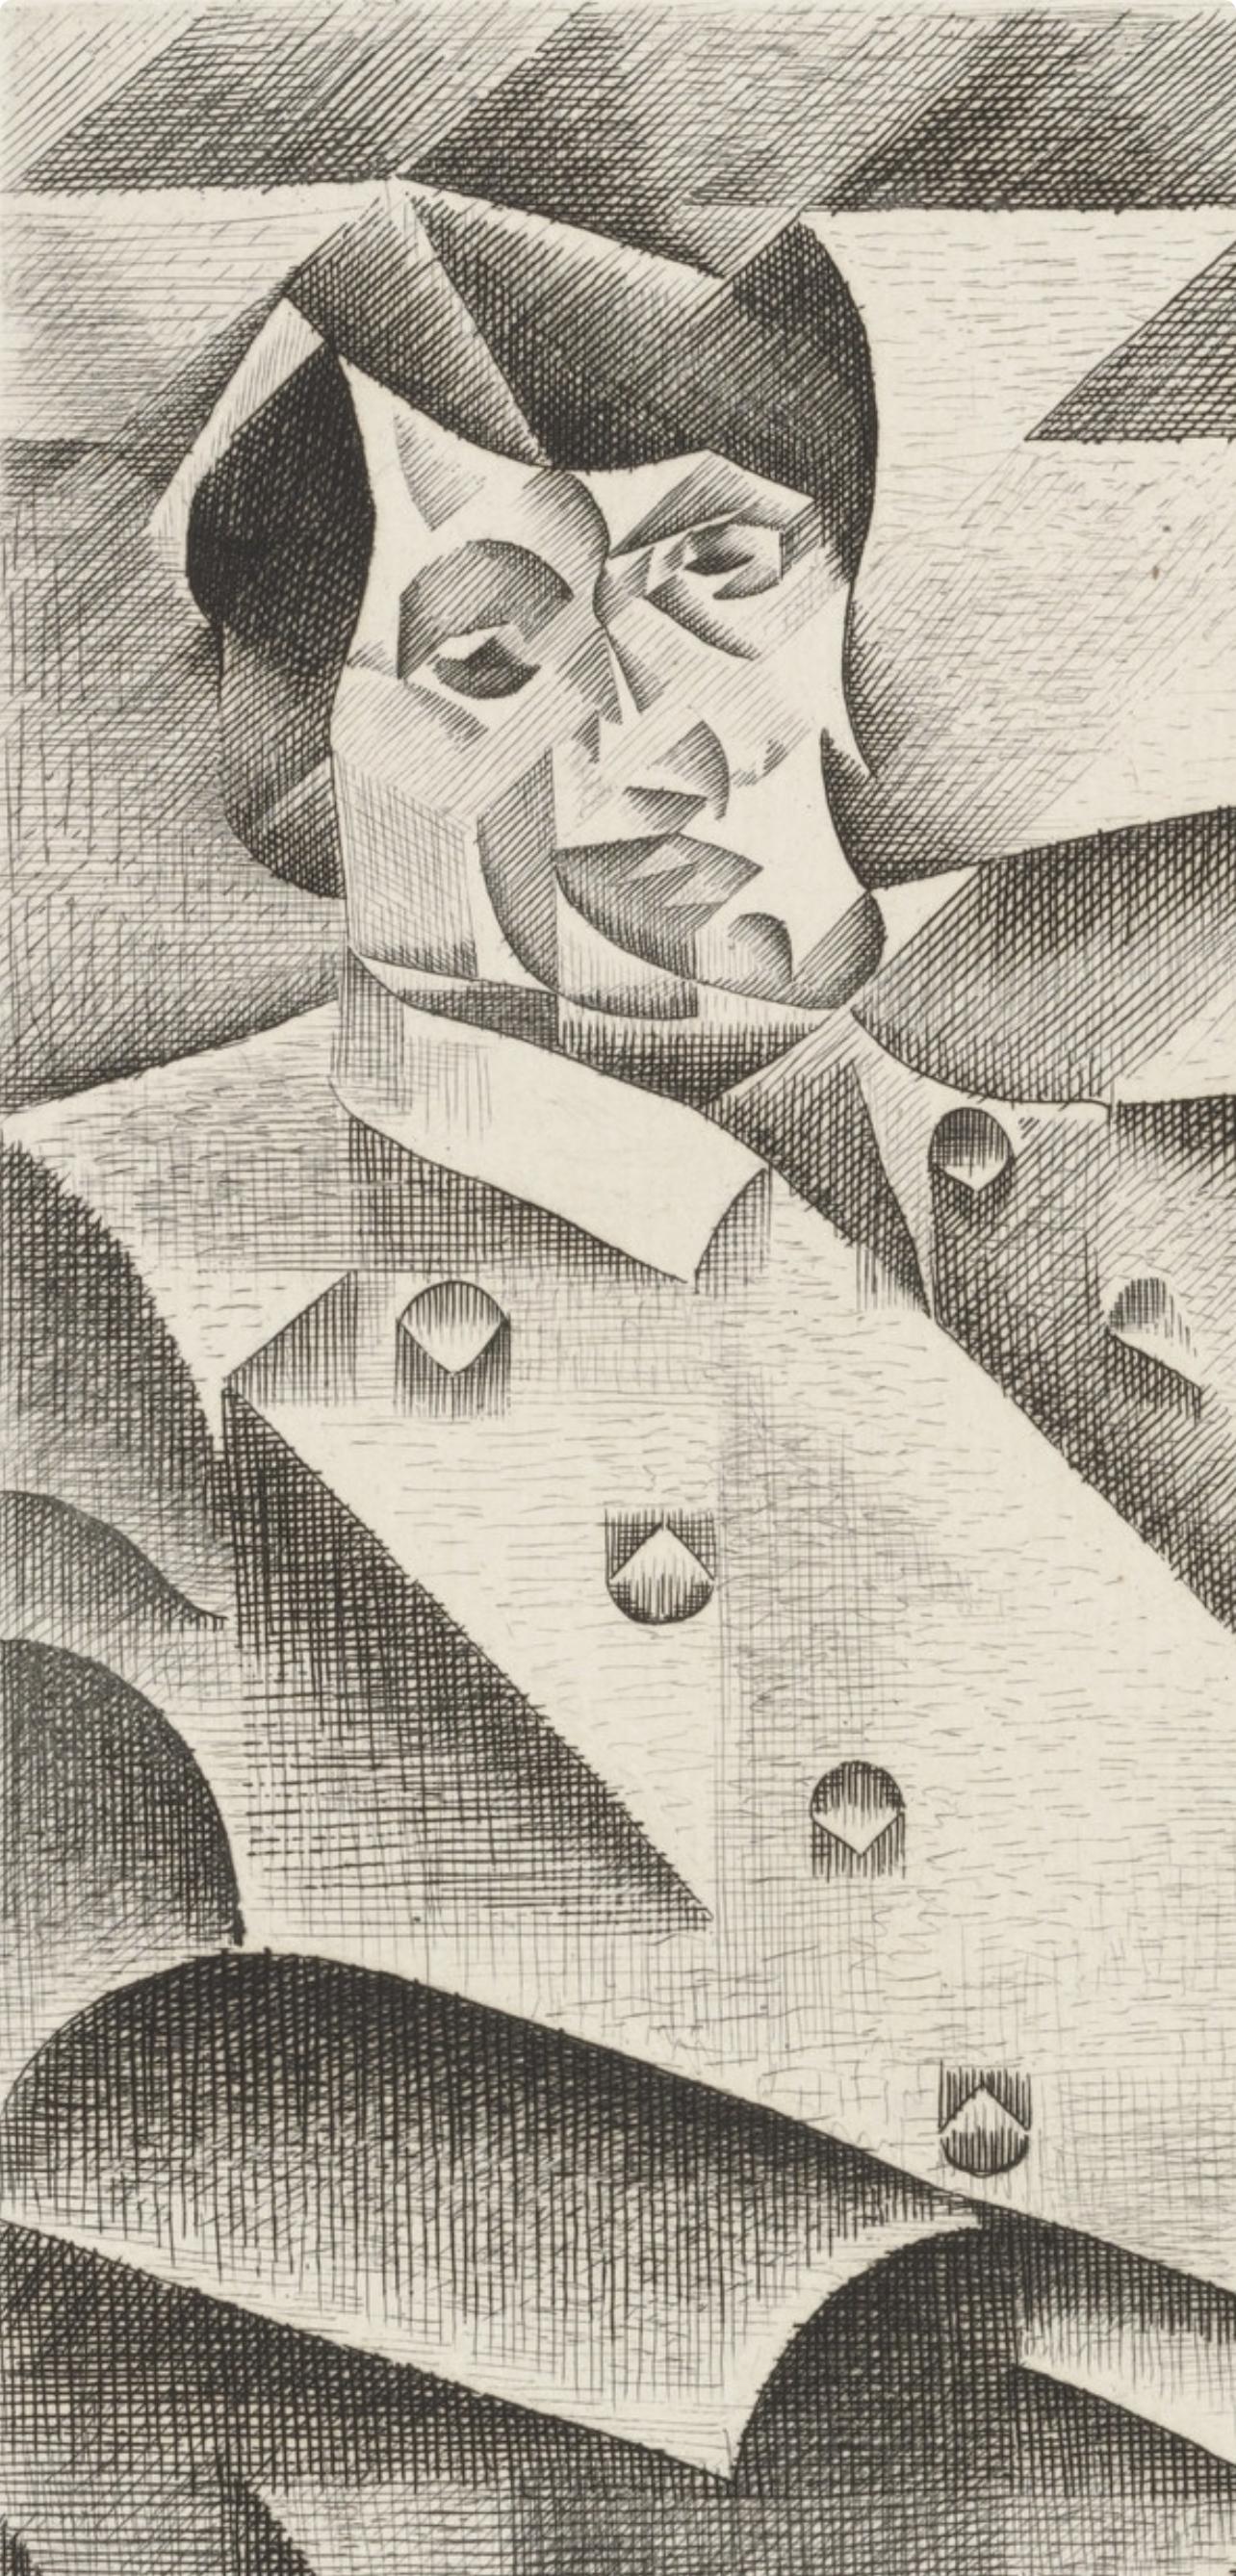 Gris, Composition, Du cubisme (after) - Print by Juan Gris